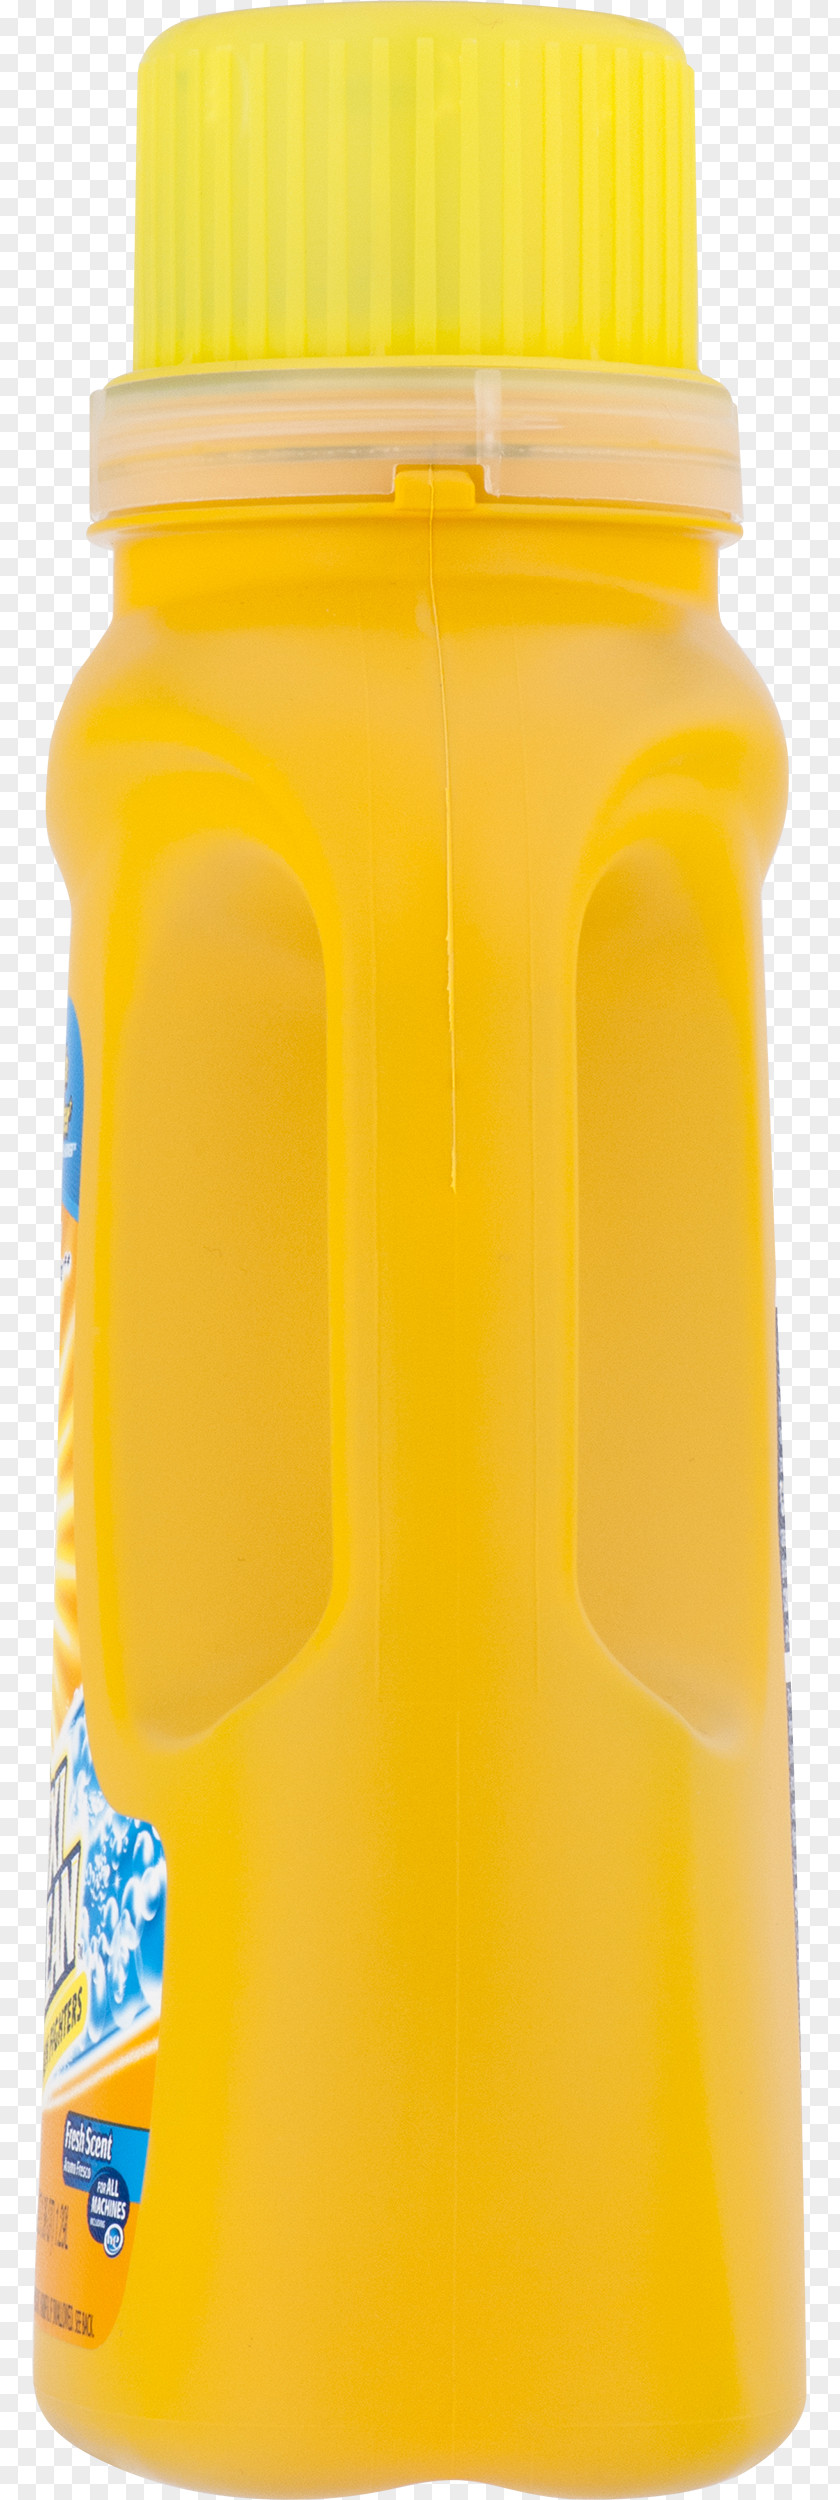 Bottle Orange Drink Soft Juice Water Bottles Plastic PNG